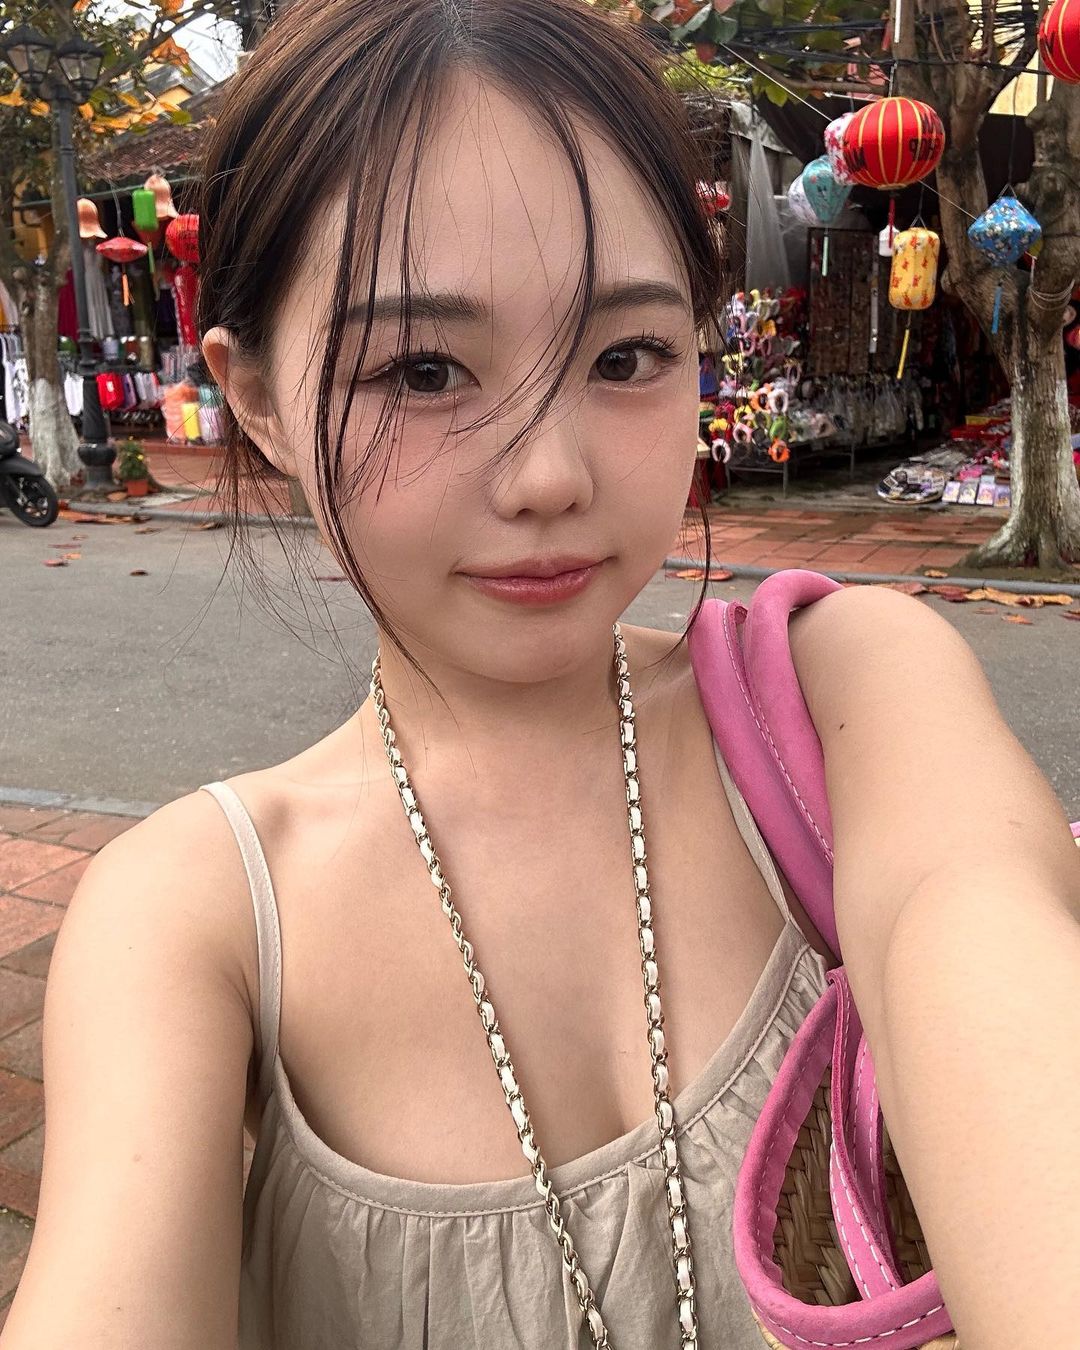 Người đẹp Hàn Quốc hiện đang có chuyến du lịch tại Việt Nam.